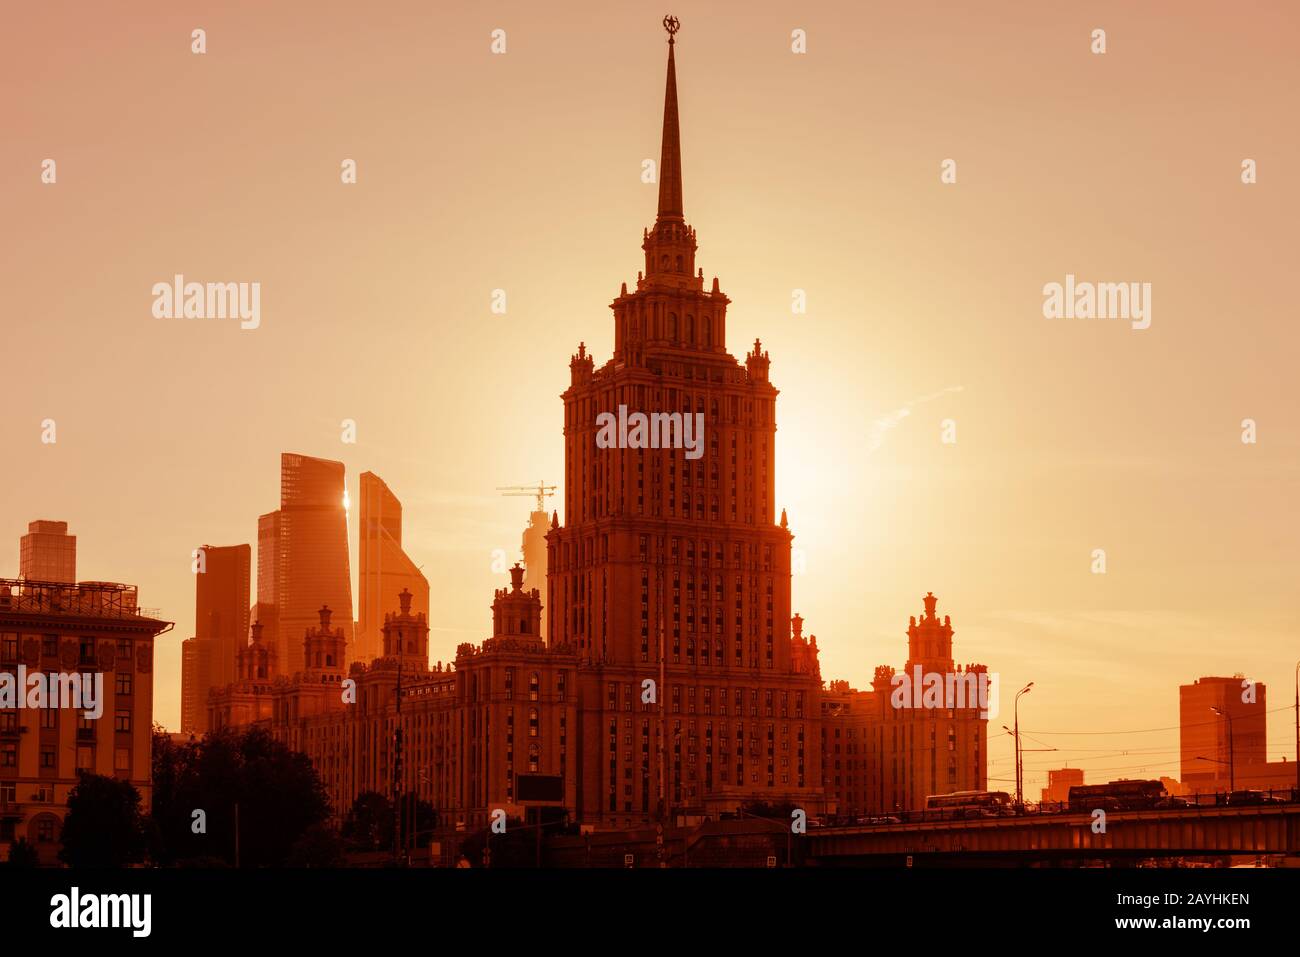 Radisson Royal Hotel (ehemalige Ukraine) bei Sonnenuntergang, Moskau, Russland. Es ist ein stalinistischer Wolkenkratzer und Wahrzeichen Moskaus. Sonnige Aussicht auf Moskau Stockfoto